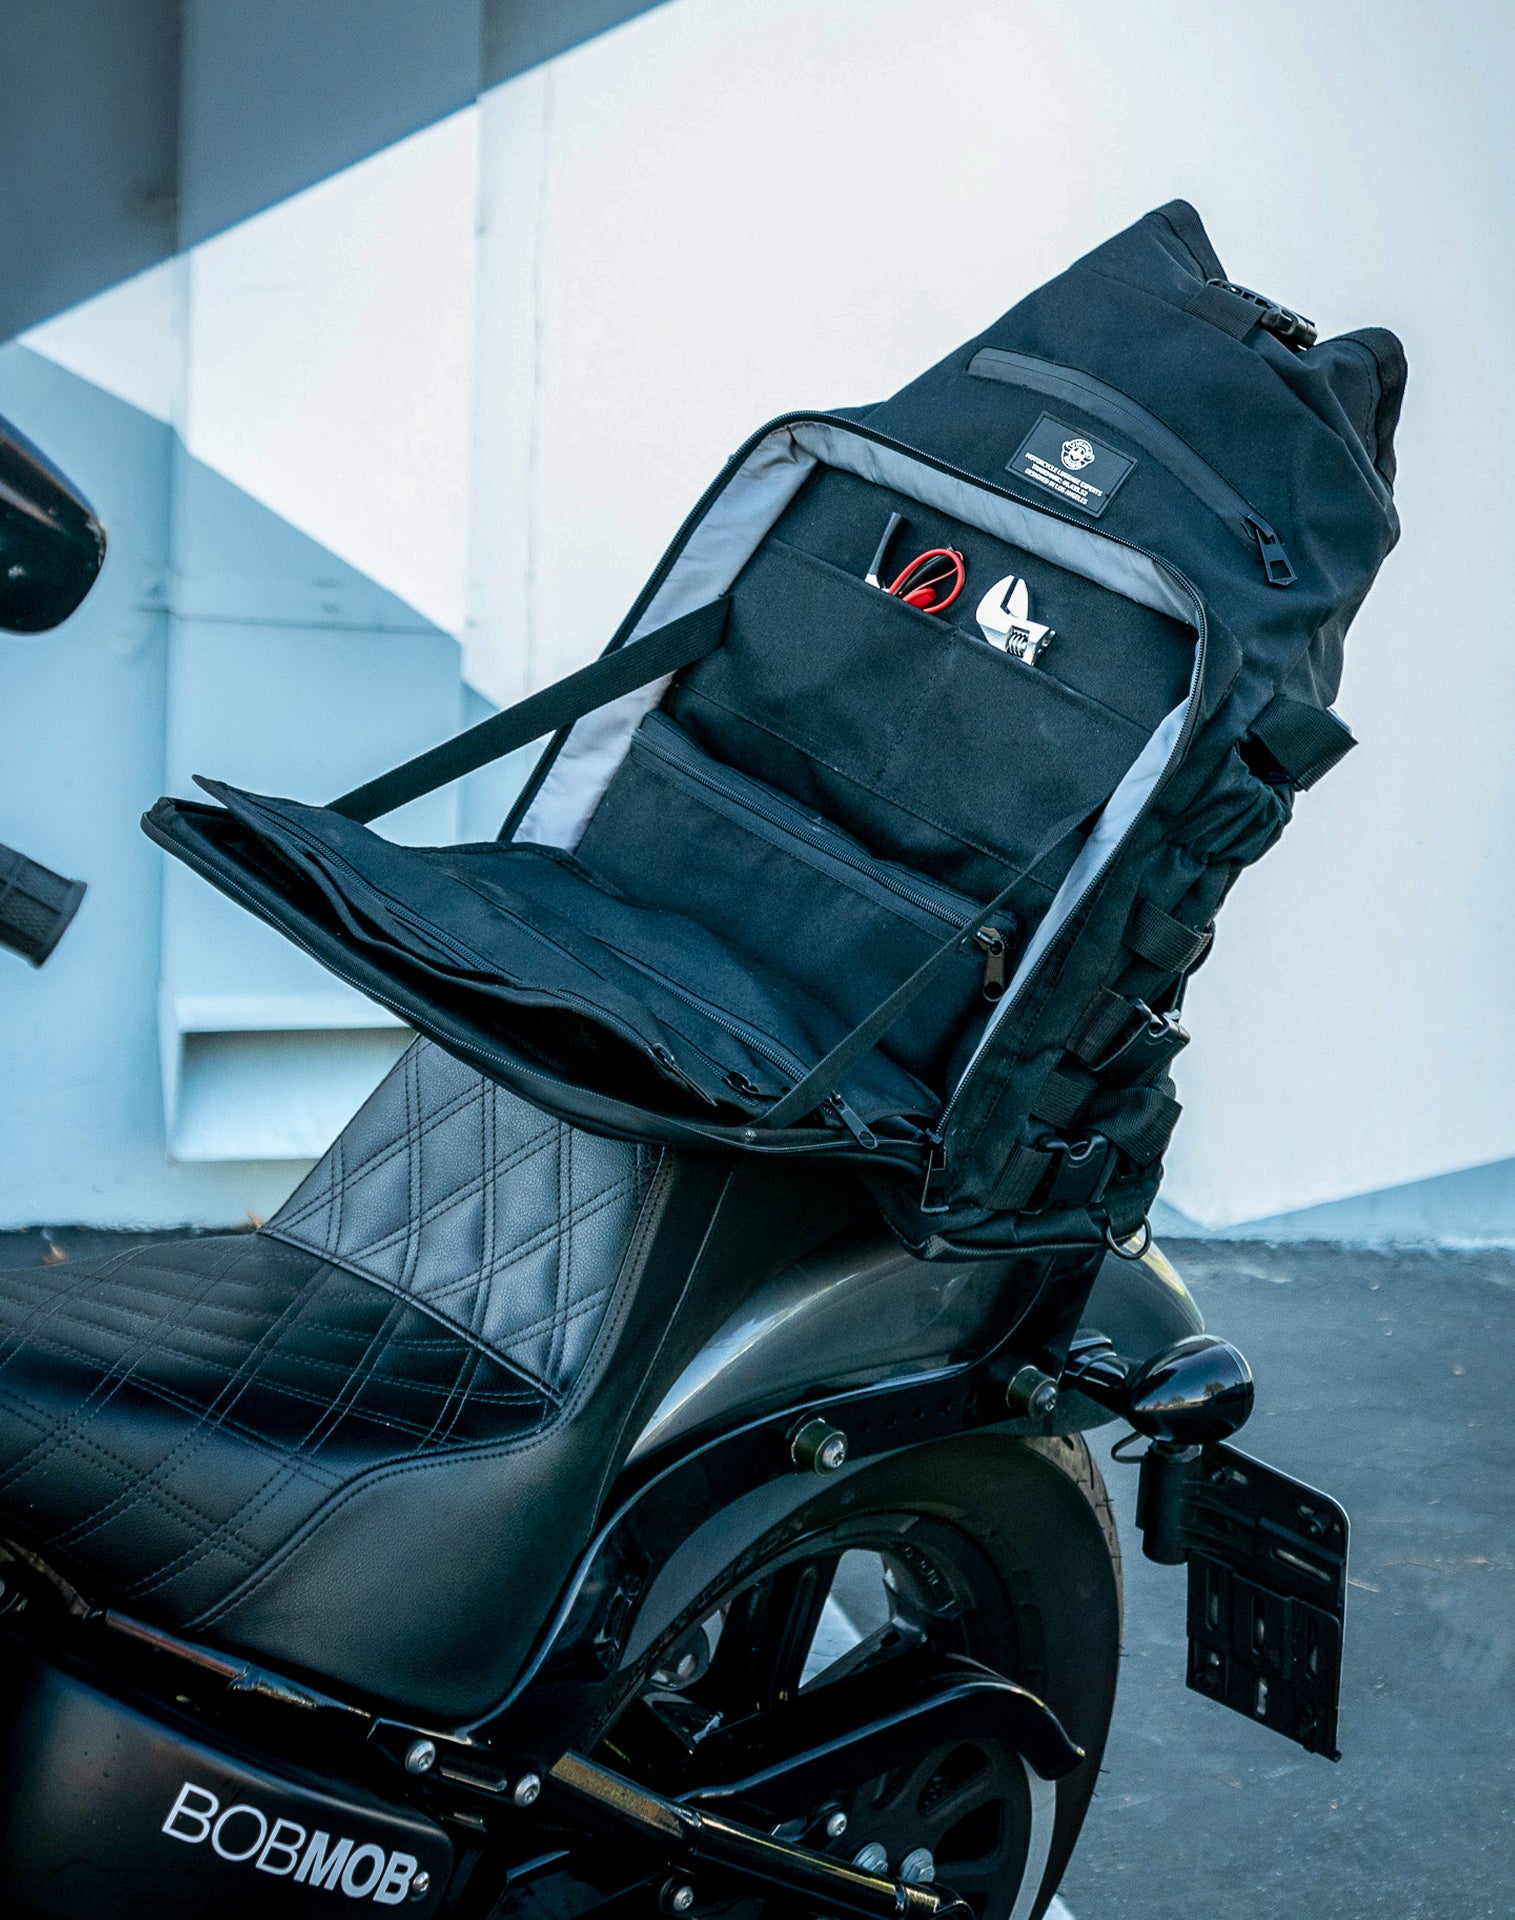 32L - Renegade XL Motorcycle Tail Bag for Harley Davidson